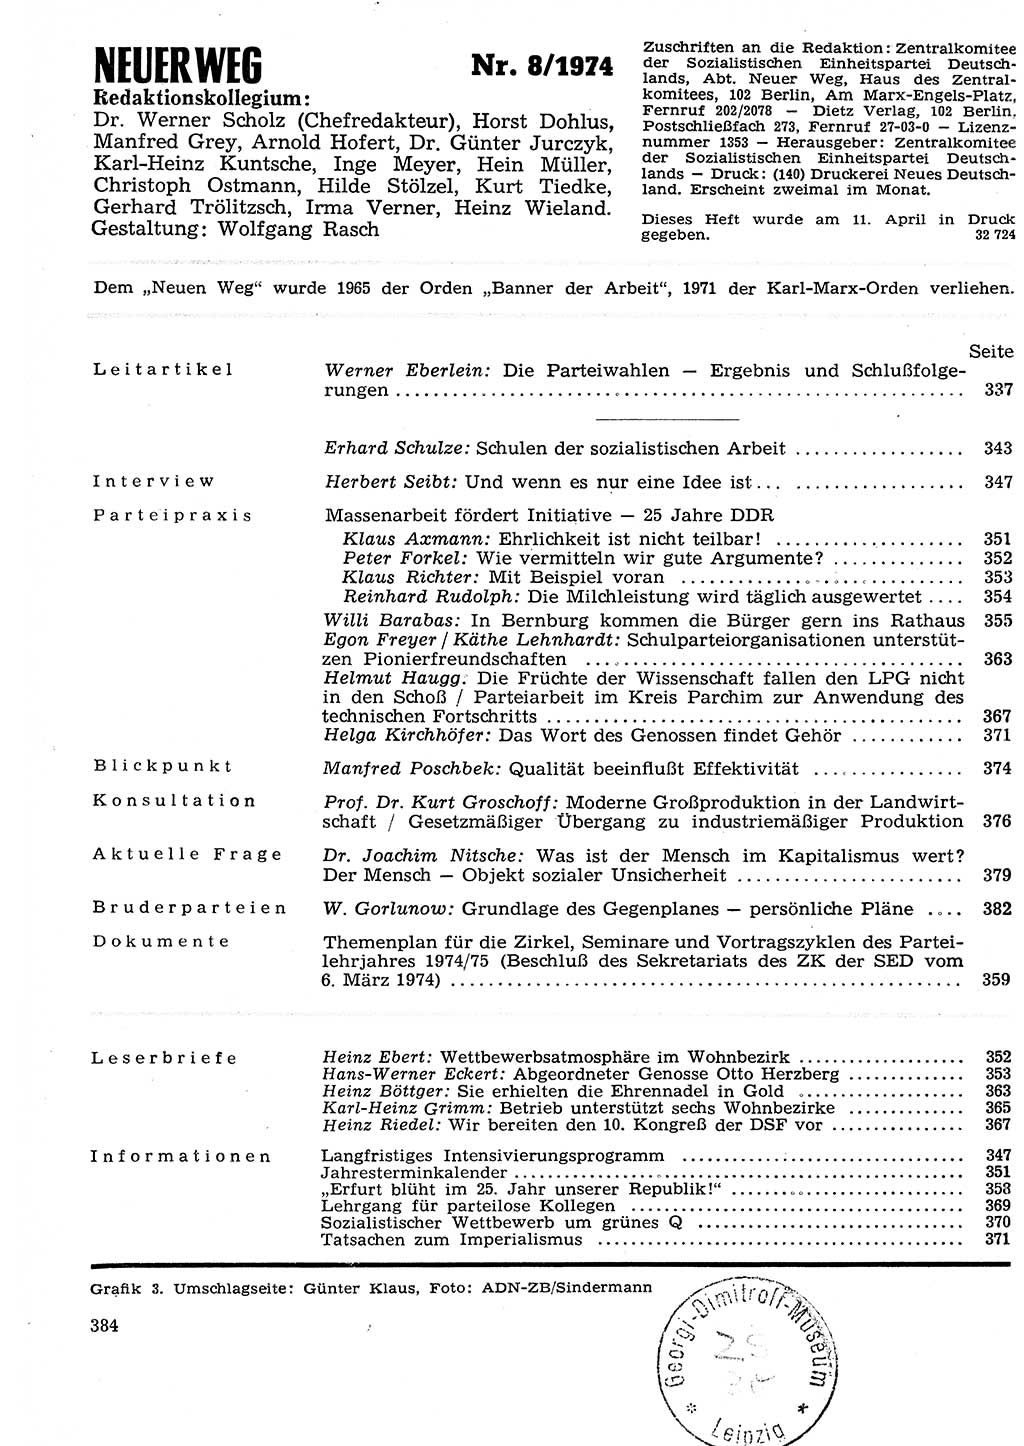 Neuer Weg (NW), Organ des Zentralkomitees (ZK) der SED (Sozialistische Einheitspartei Deutschlands) für Fragen des Parteilebens, 29. Jahrgang [Deutsche Demokratische Republik (DDR)] 1974, Seite 384 (NW ZK SED DDR 1974, S. 384)